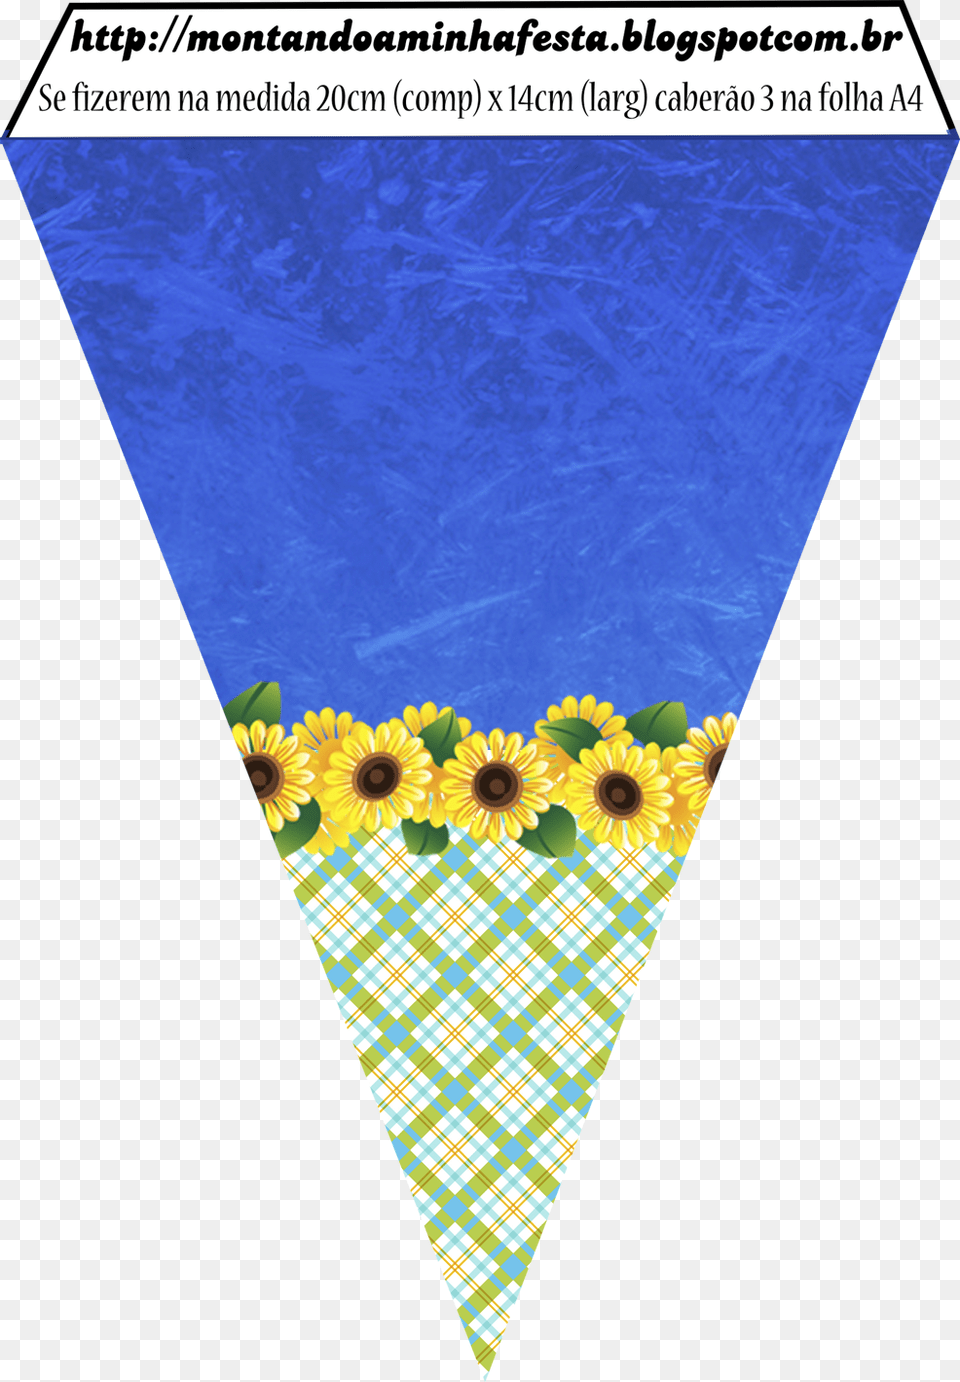 Bandeirolas Homem Aranha, Flower, Plant, Sunflower, Daisy Free Png